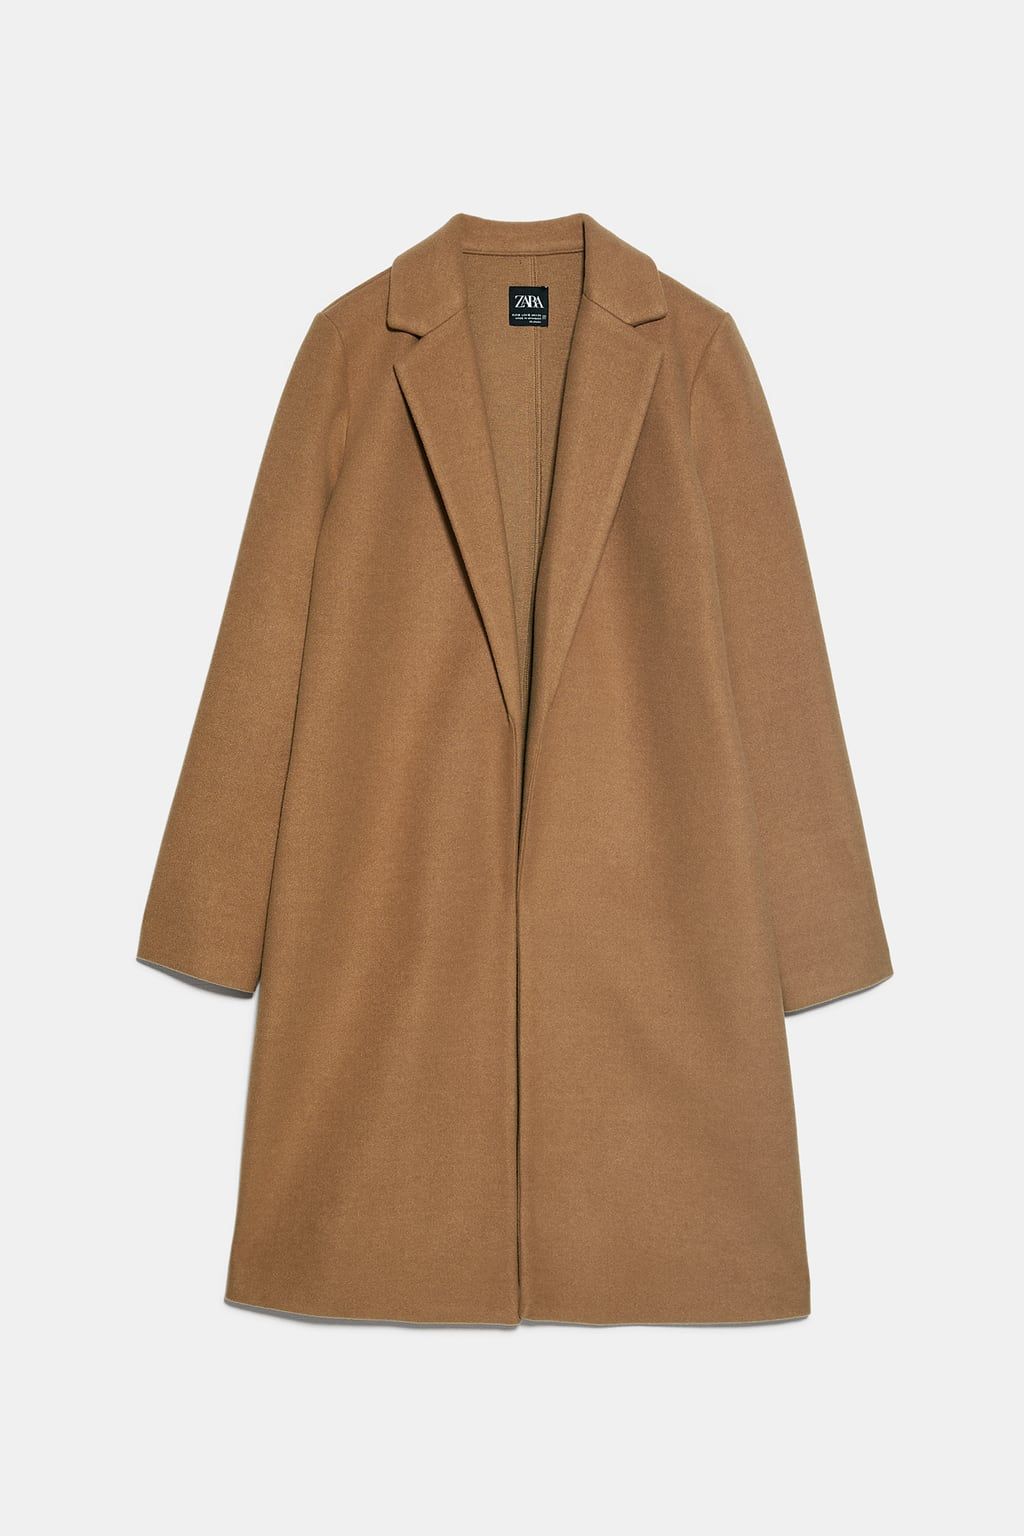 Abrigo de corte masculino de Zara en color camel que es la prenda de abrigo multiusos ideal para el otoño